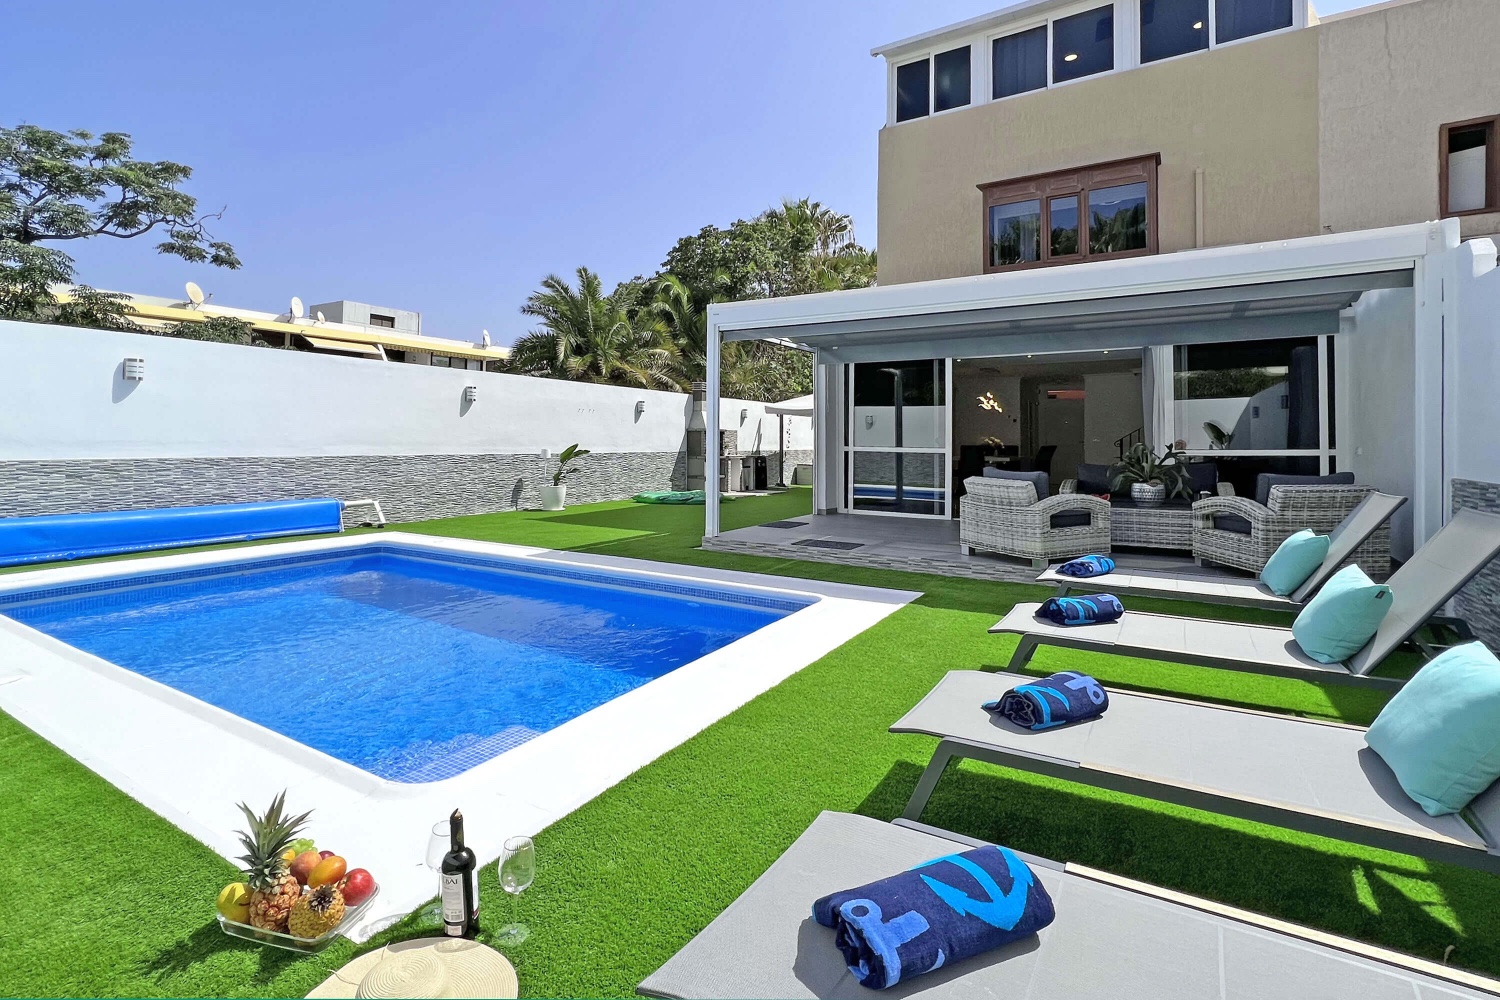 Flot og moderne feriehus kun 50 meter fra havet, med privat pool, grill og privat garage.